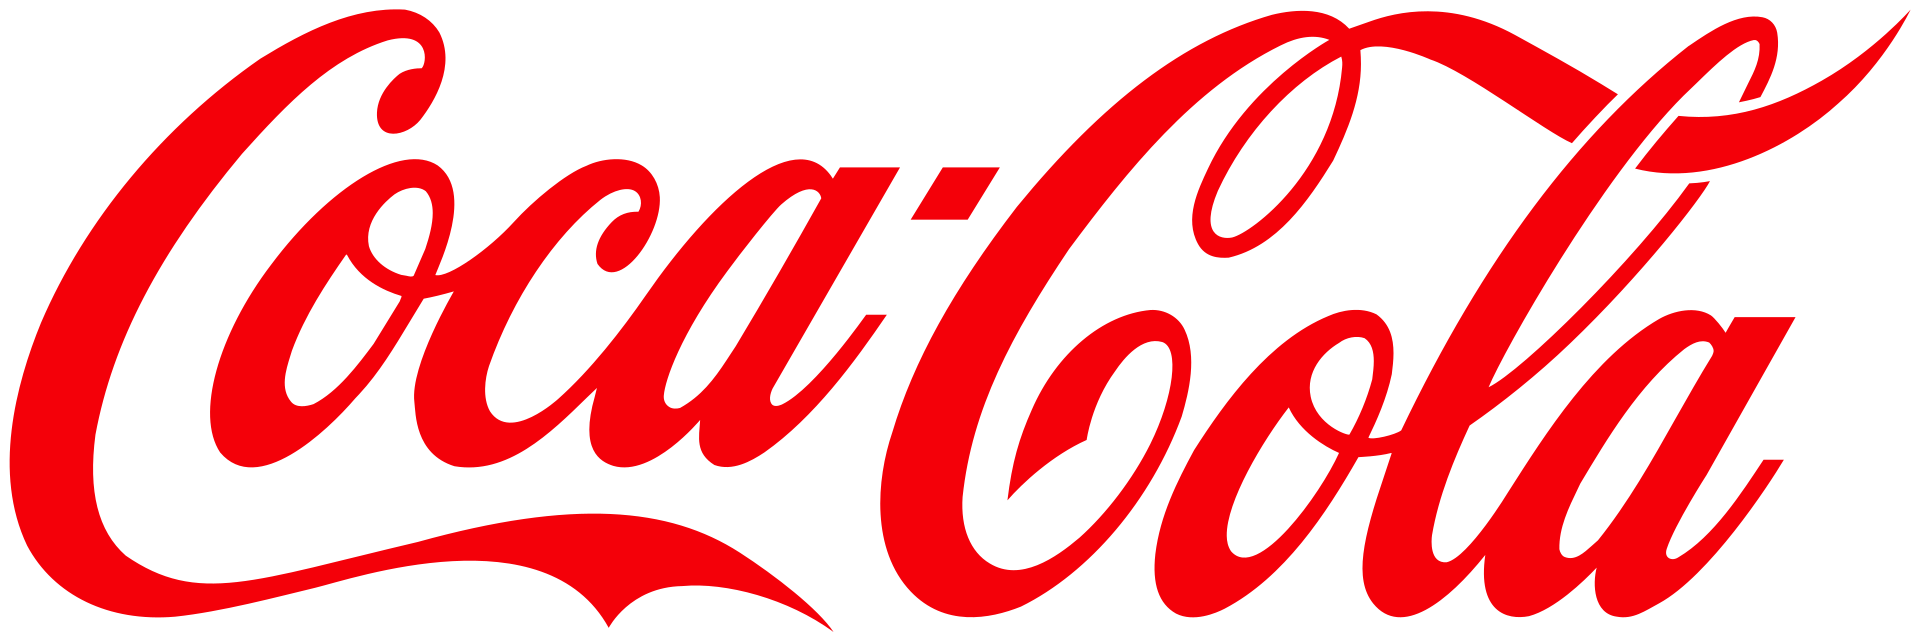  Coca-Cola Company